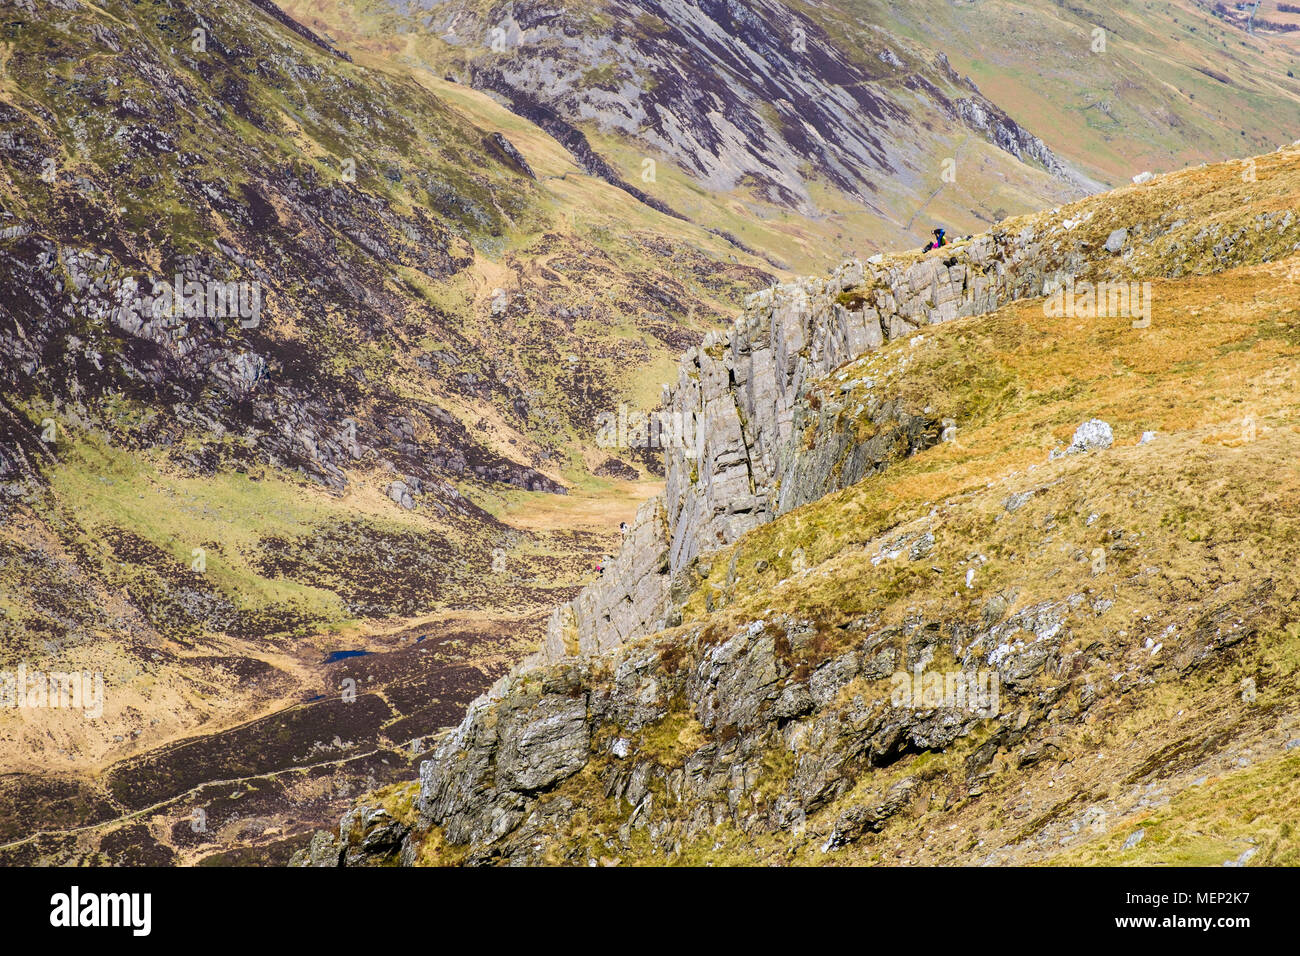 Cneifion Arete rock Jagt auf Y Gribin ridge mit Kletterer oben in den Bergen von Snowdonia National Park. Ogwen, Conwy, Wales, Großbritannien, Großbritannien Stockfoto